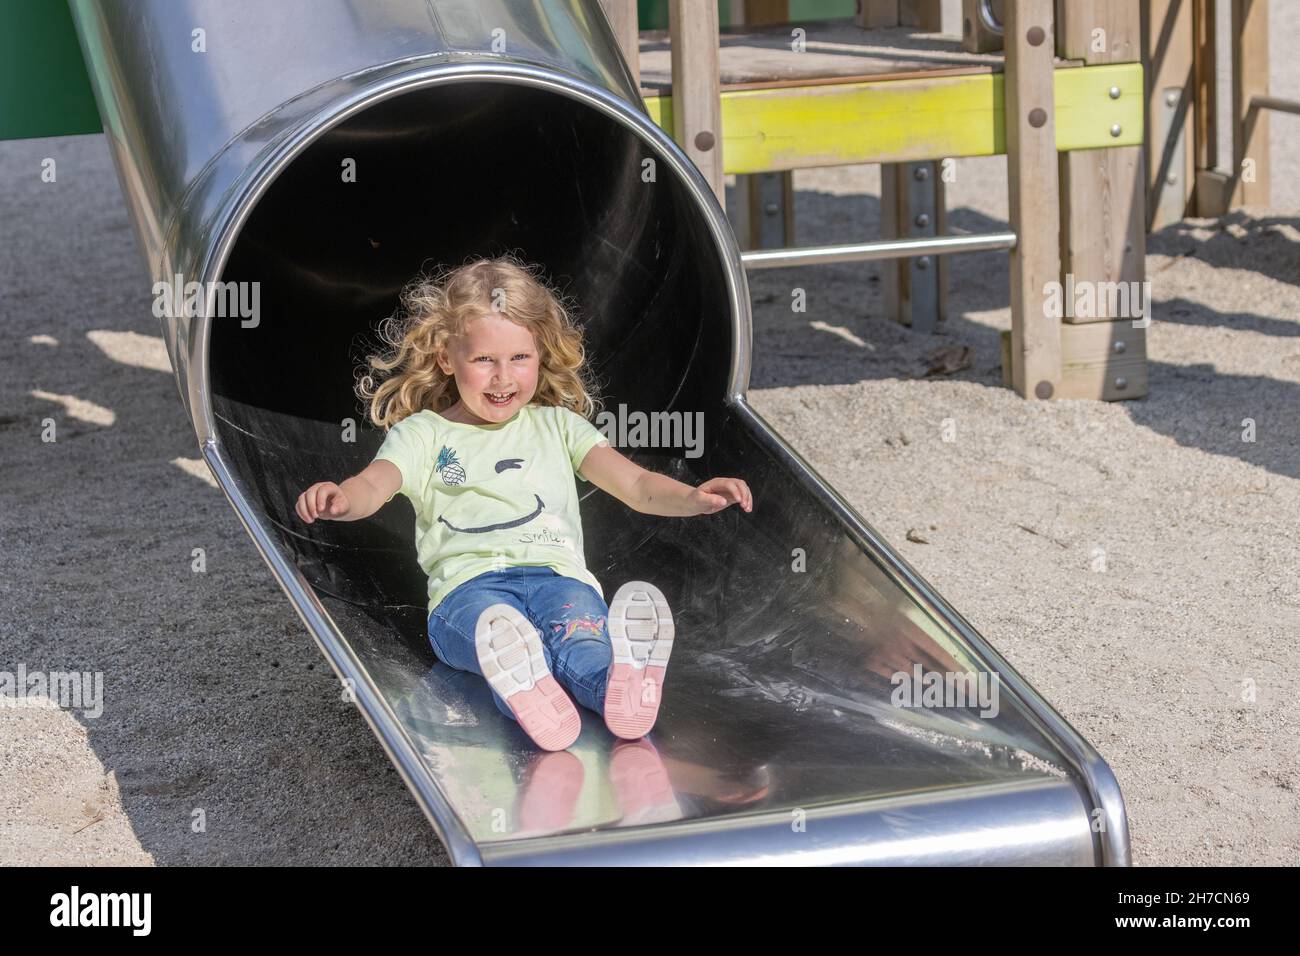 Petite fille avec rire heureux et cheveux volante un toboggan, Allemagne, Bavière Banque D'Images